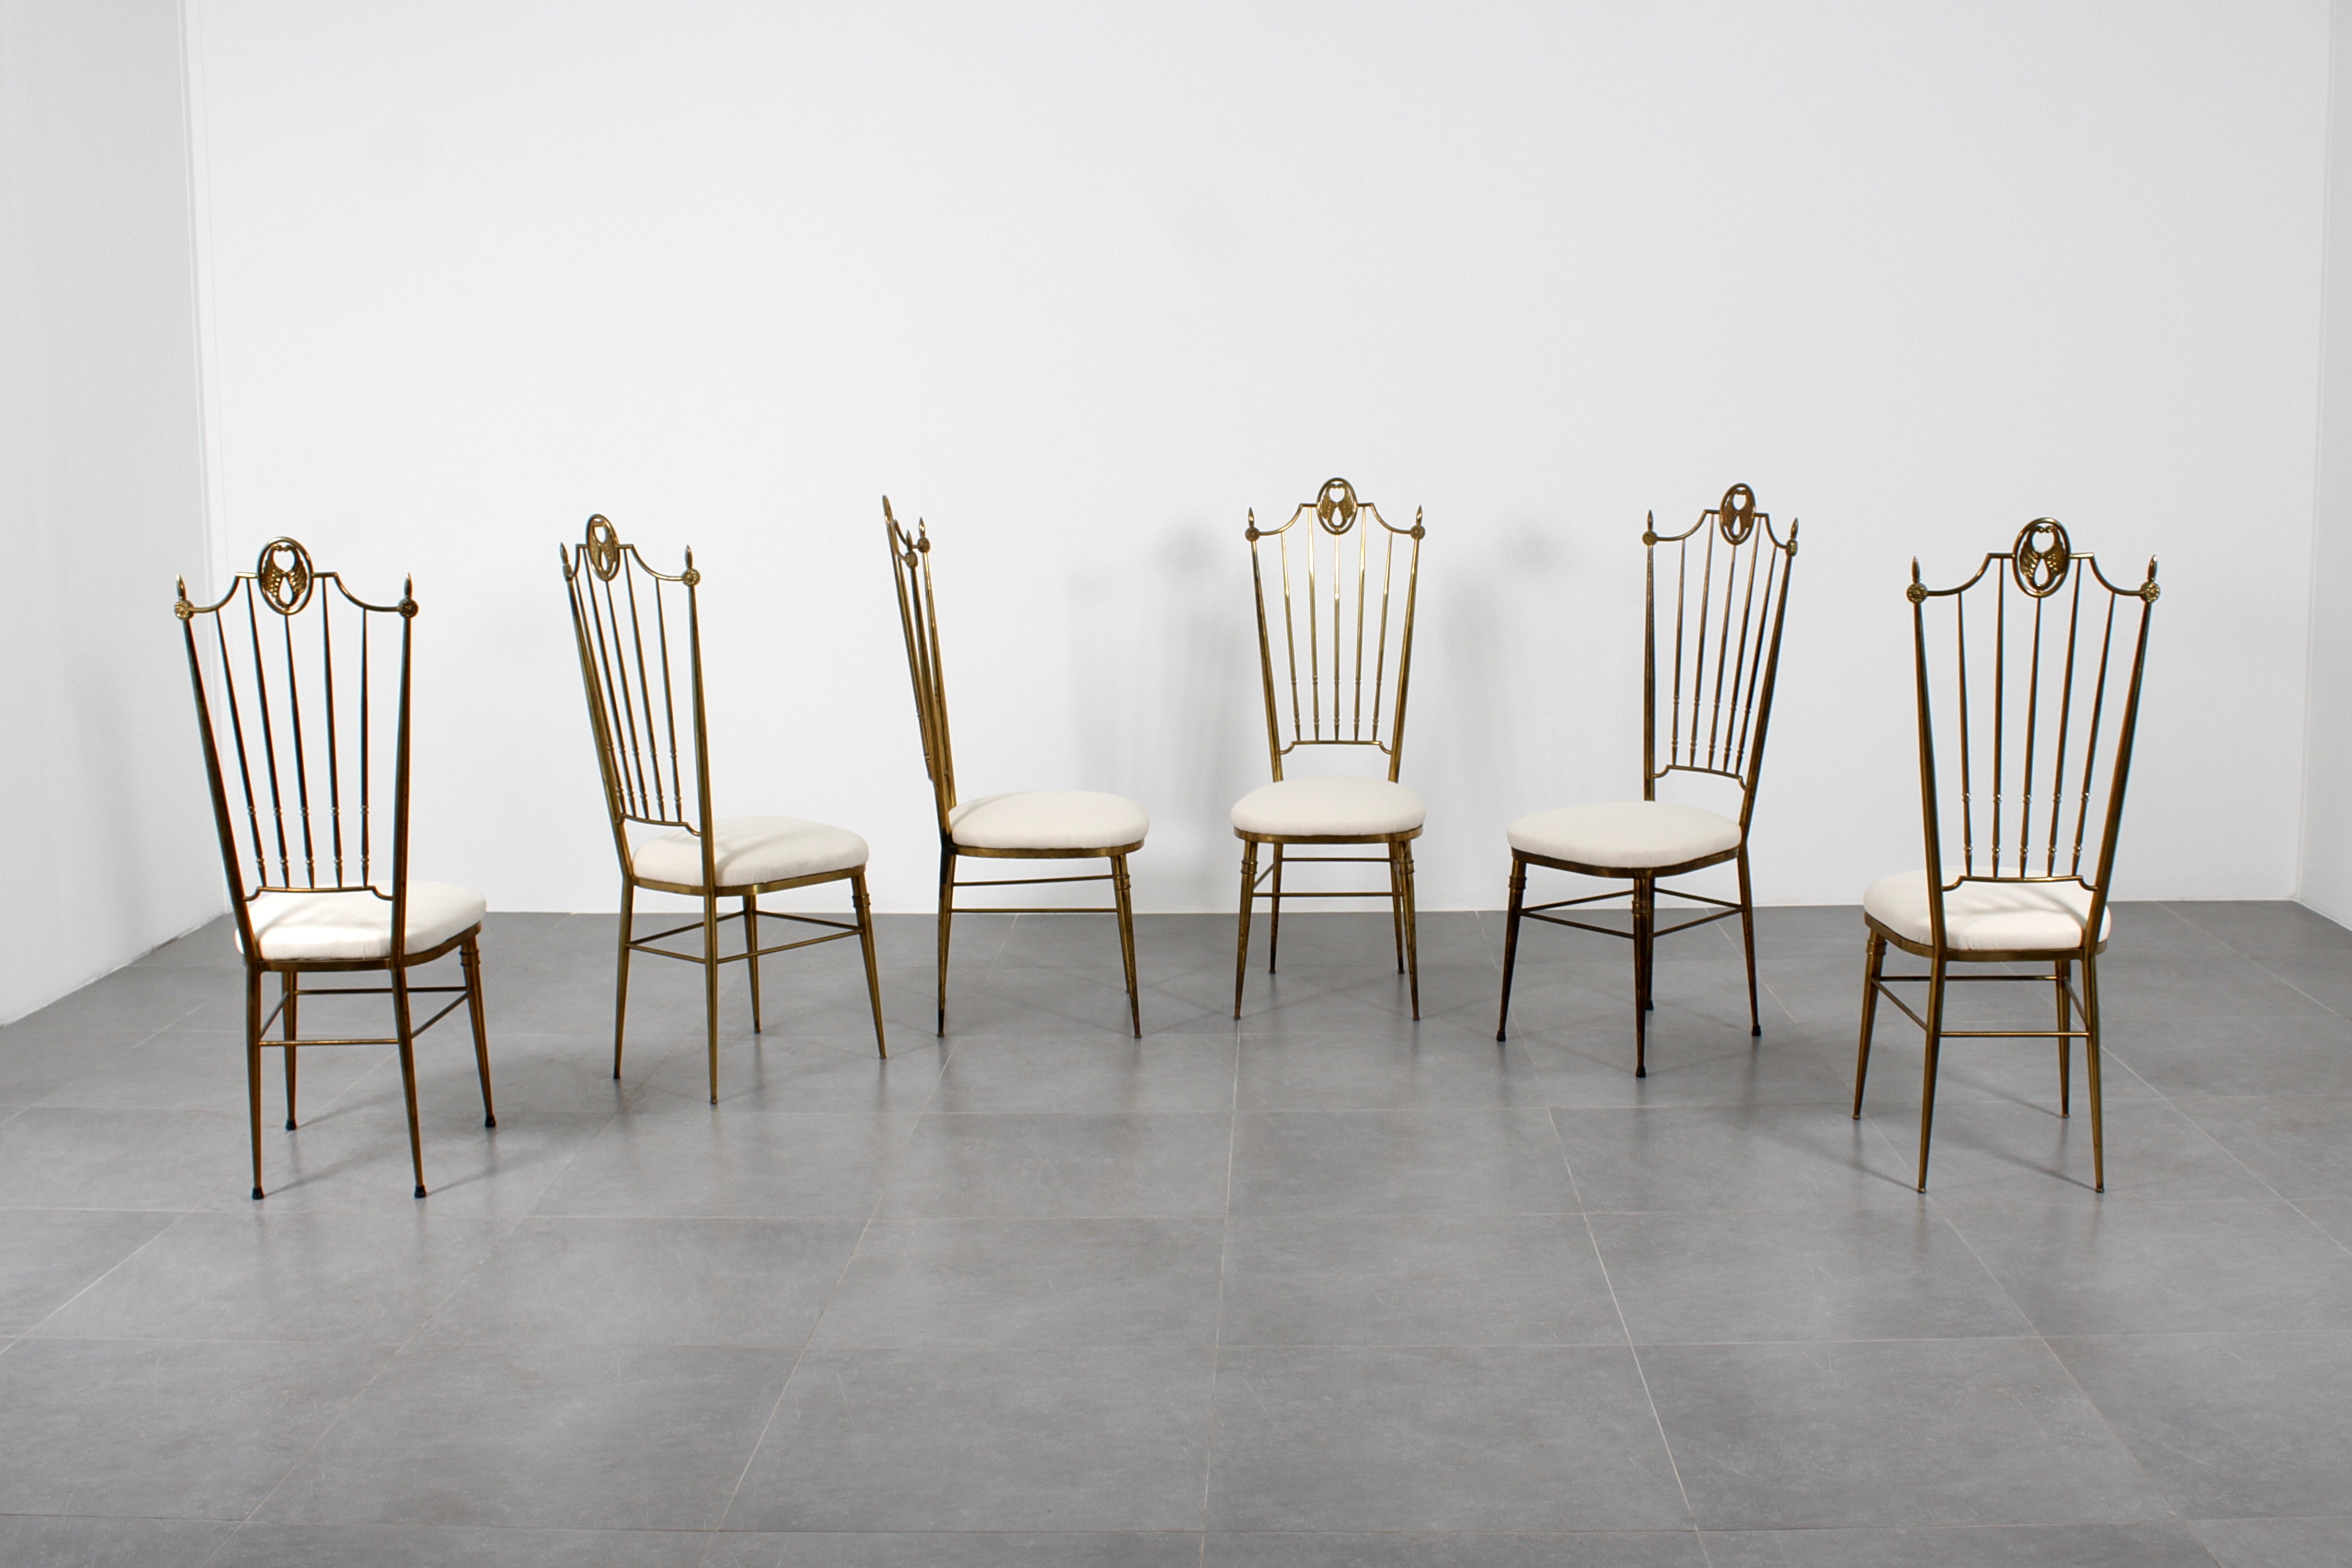 Ensemble très élégant de 6 chaises de salle à manger avec dossier haut en laiton doré et assise en tissu blanc. Lignes droites, courbes et éléments décoratifs agrémentent le design des dos entièrement en laiton.  Les chaises ont été retapissées.